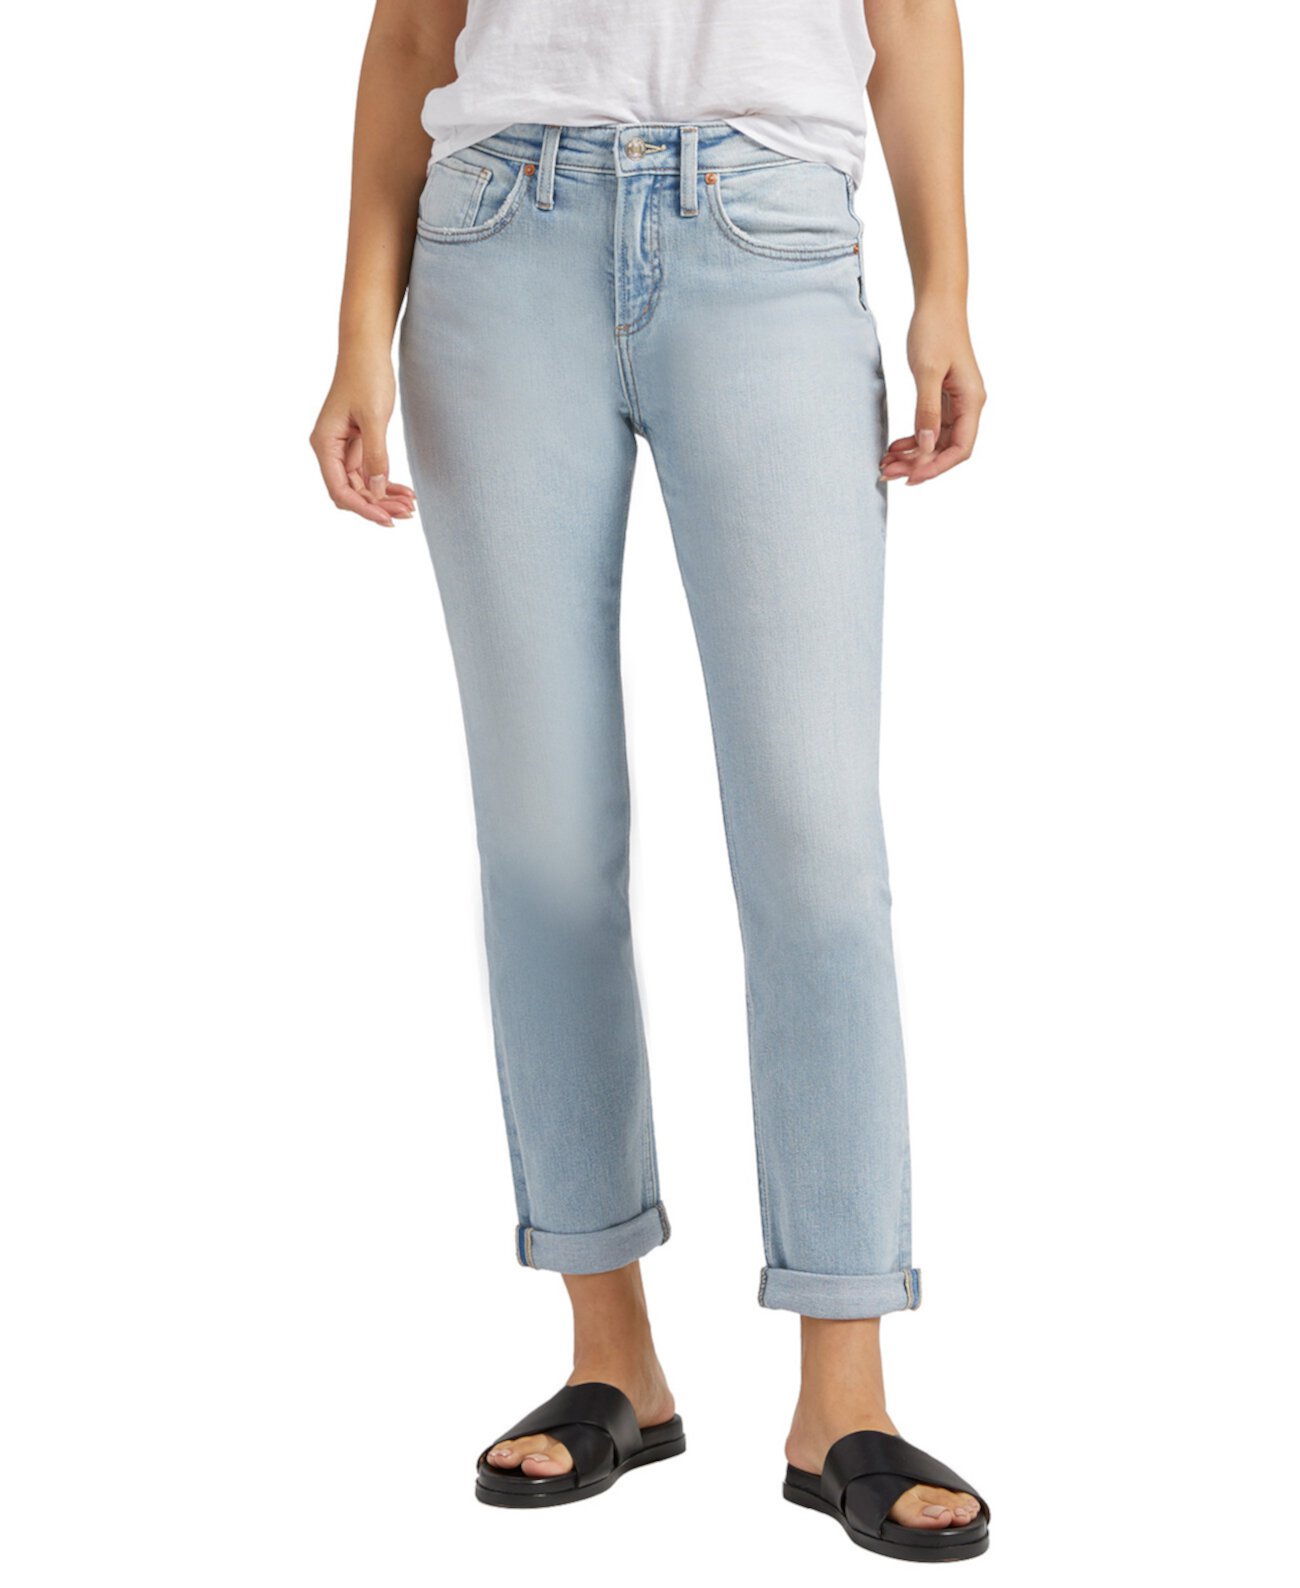 Женские джинсы узкого кроя с высокой посадкой Beau Silver Jeans Co.